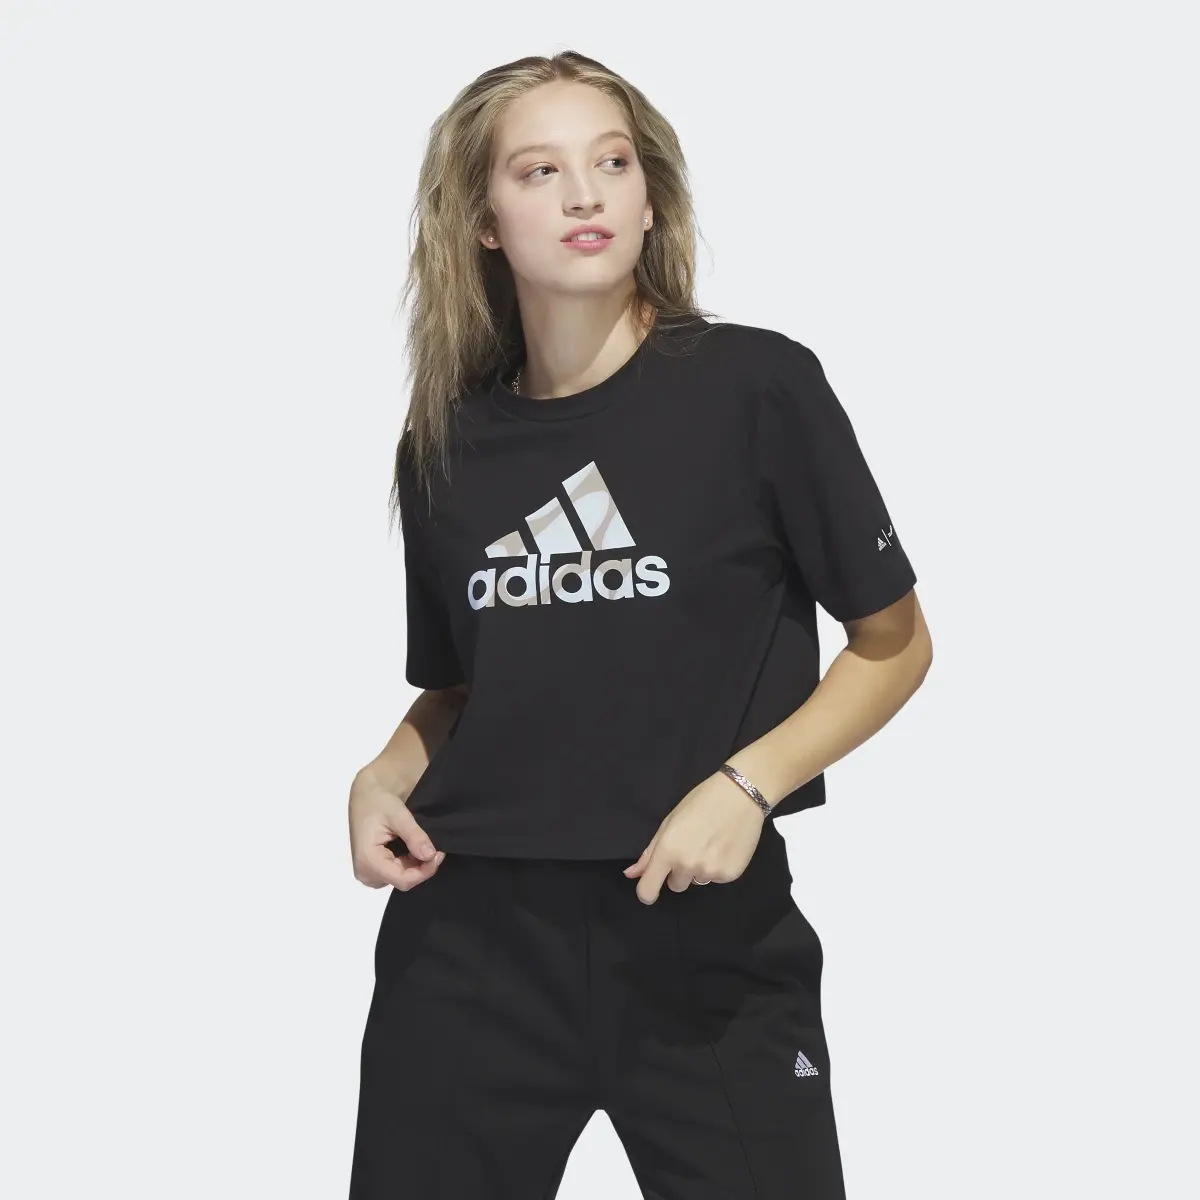 Adidas Marimekko Crop T-Shirt. 2